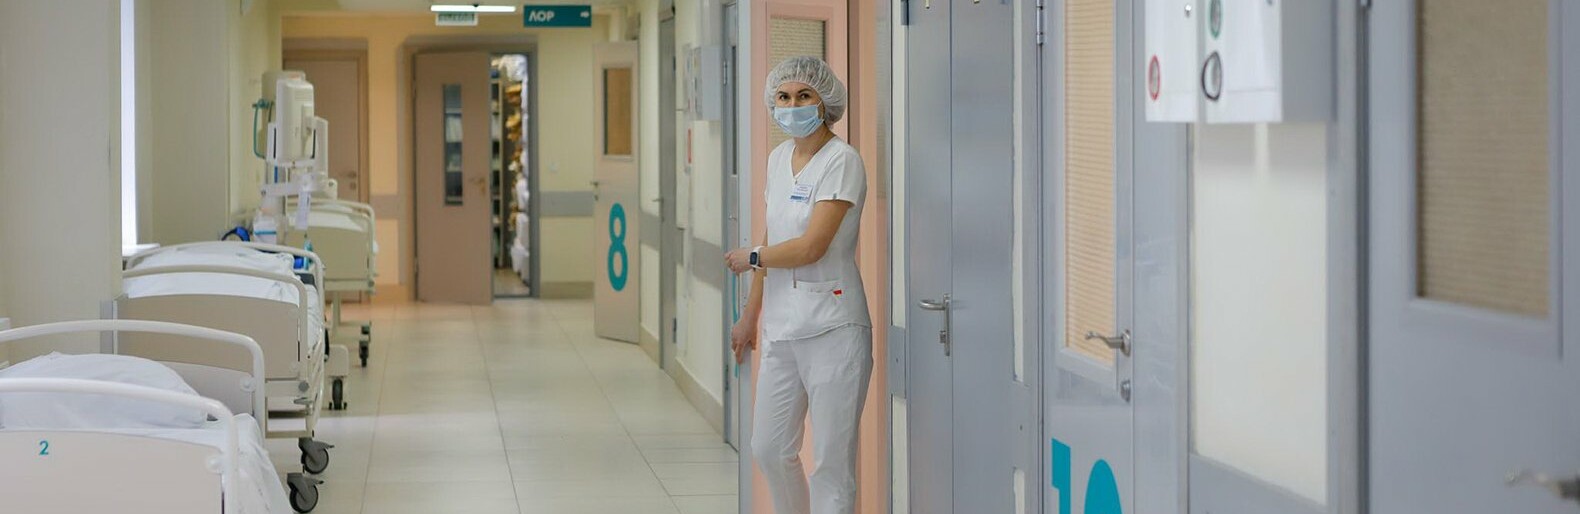 На модернизацию медоборудования белгородских больниц в этом году потратили 329,8 млн рублей 